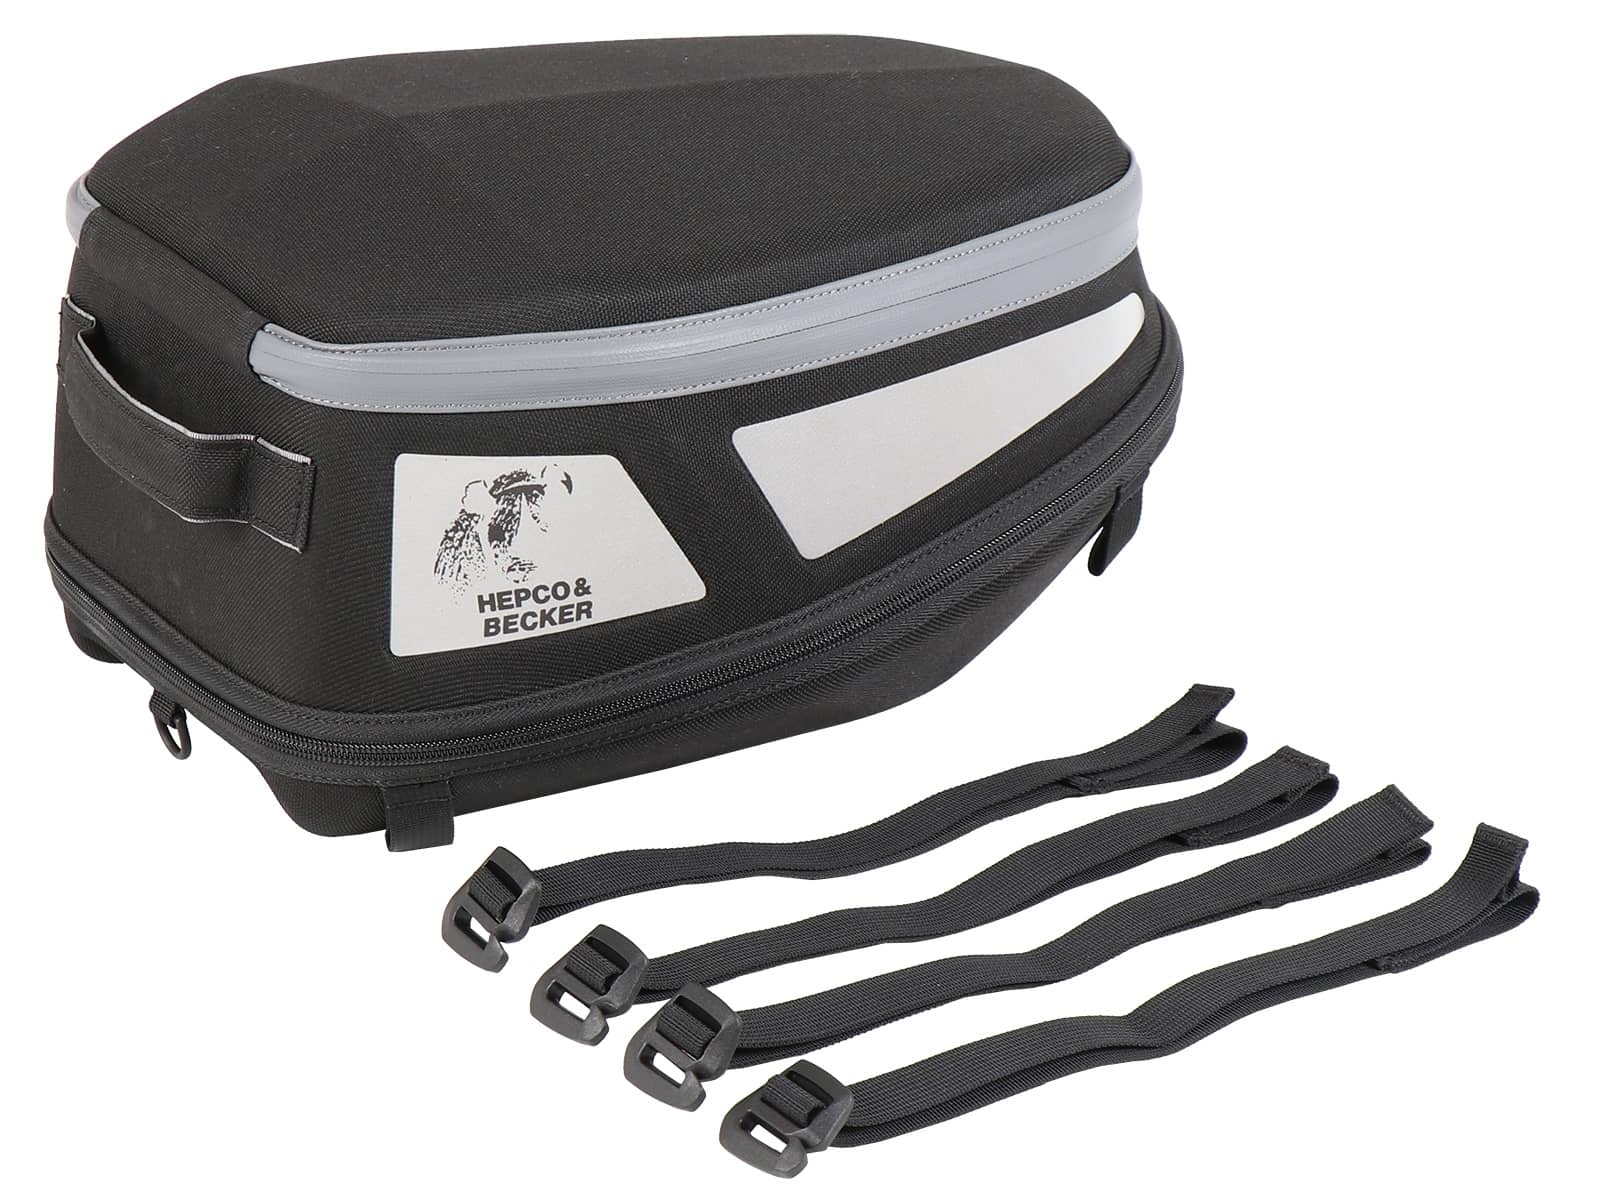 Royster Rearbag Sport Hecktasche mit Gurtbefestigung - schwarz/grau